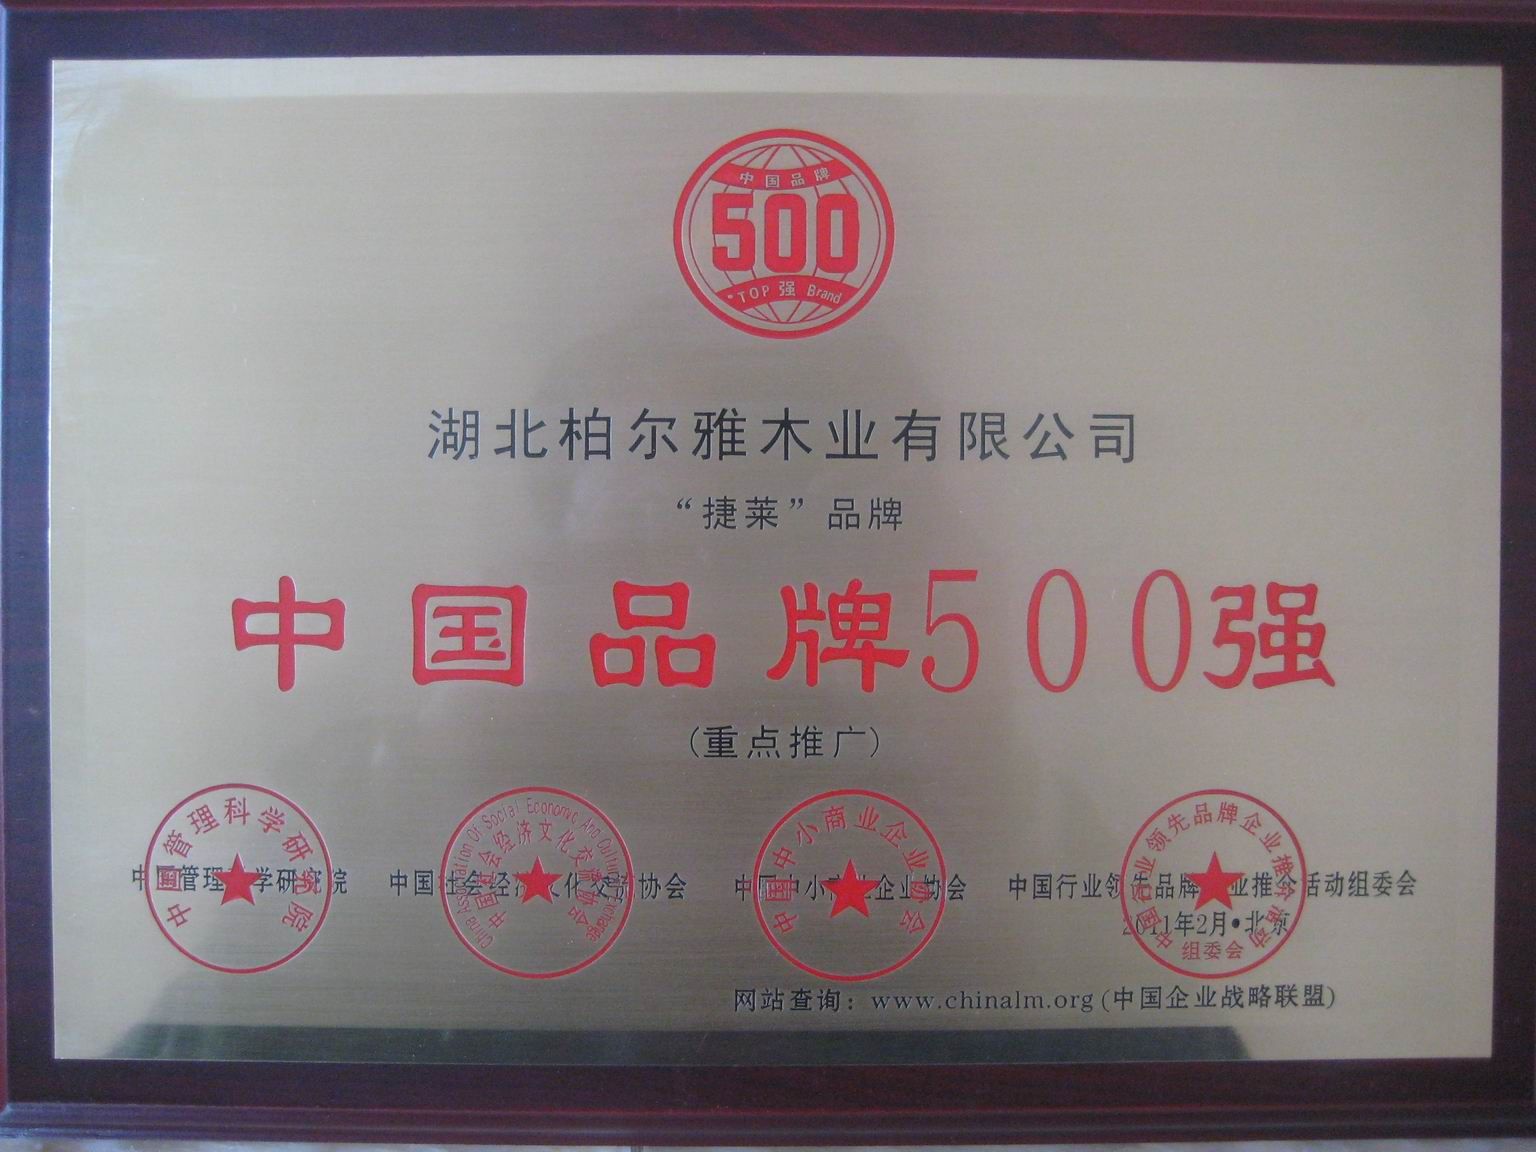 中国品牌500强捷莱 - 柏尔雅地板 - 九正建材